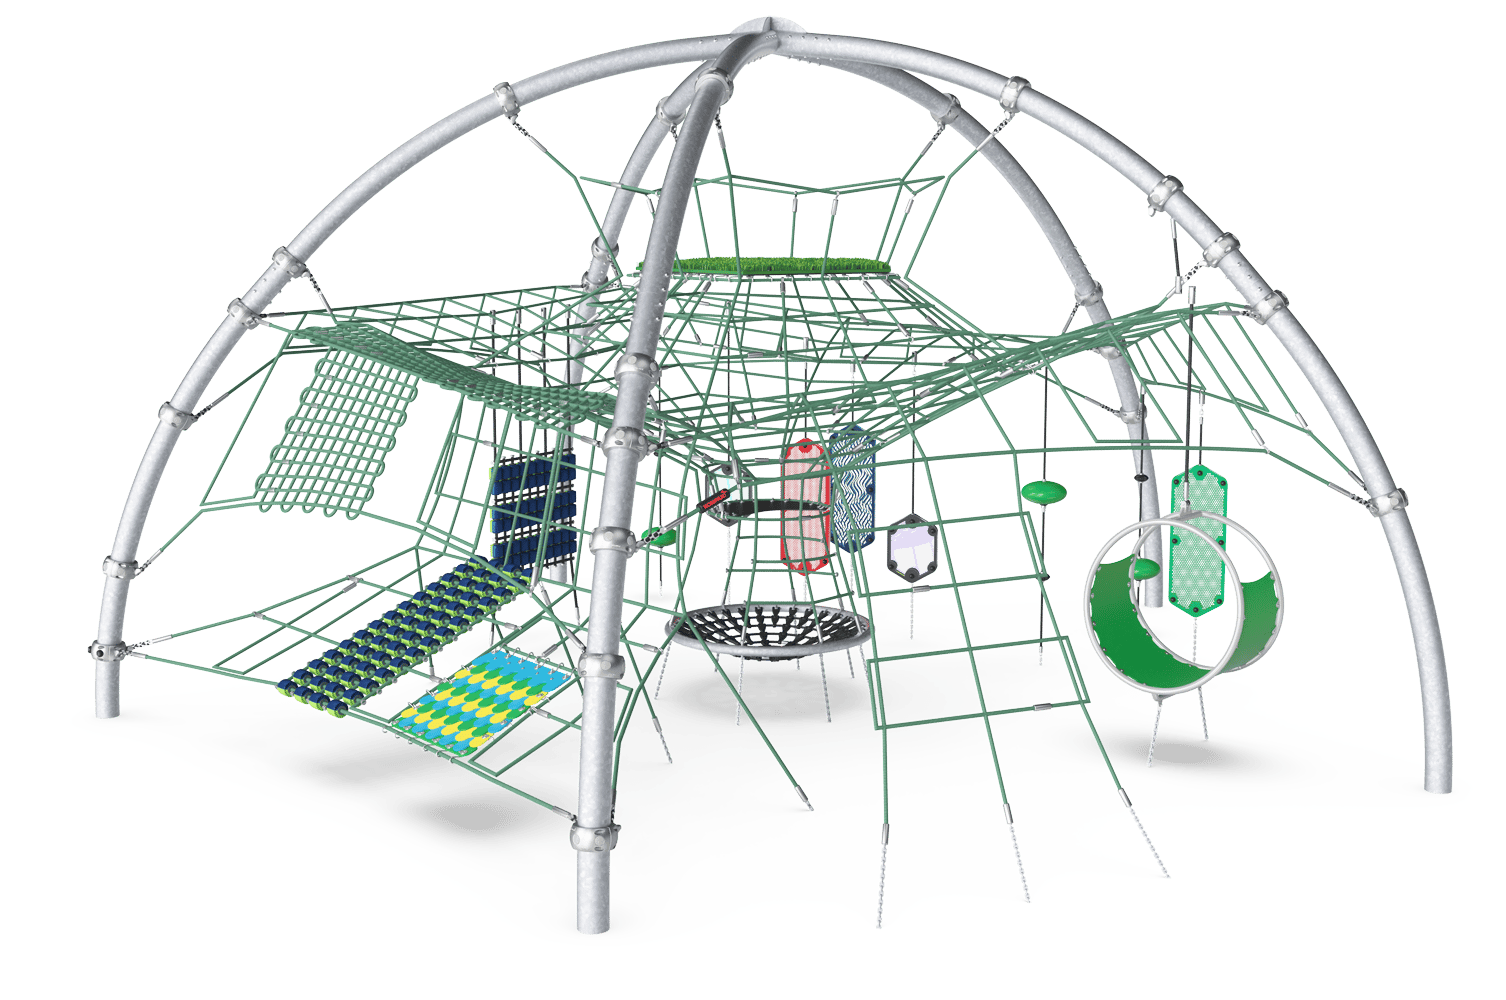 Sensory Dome